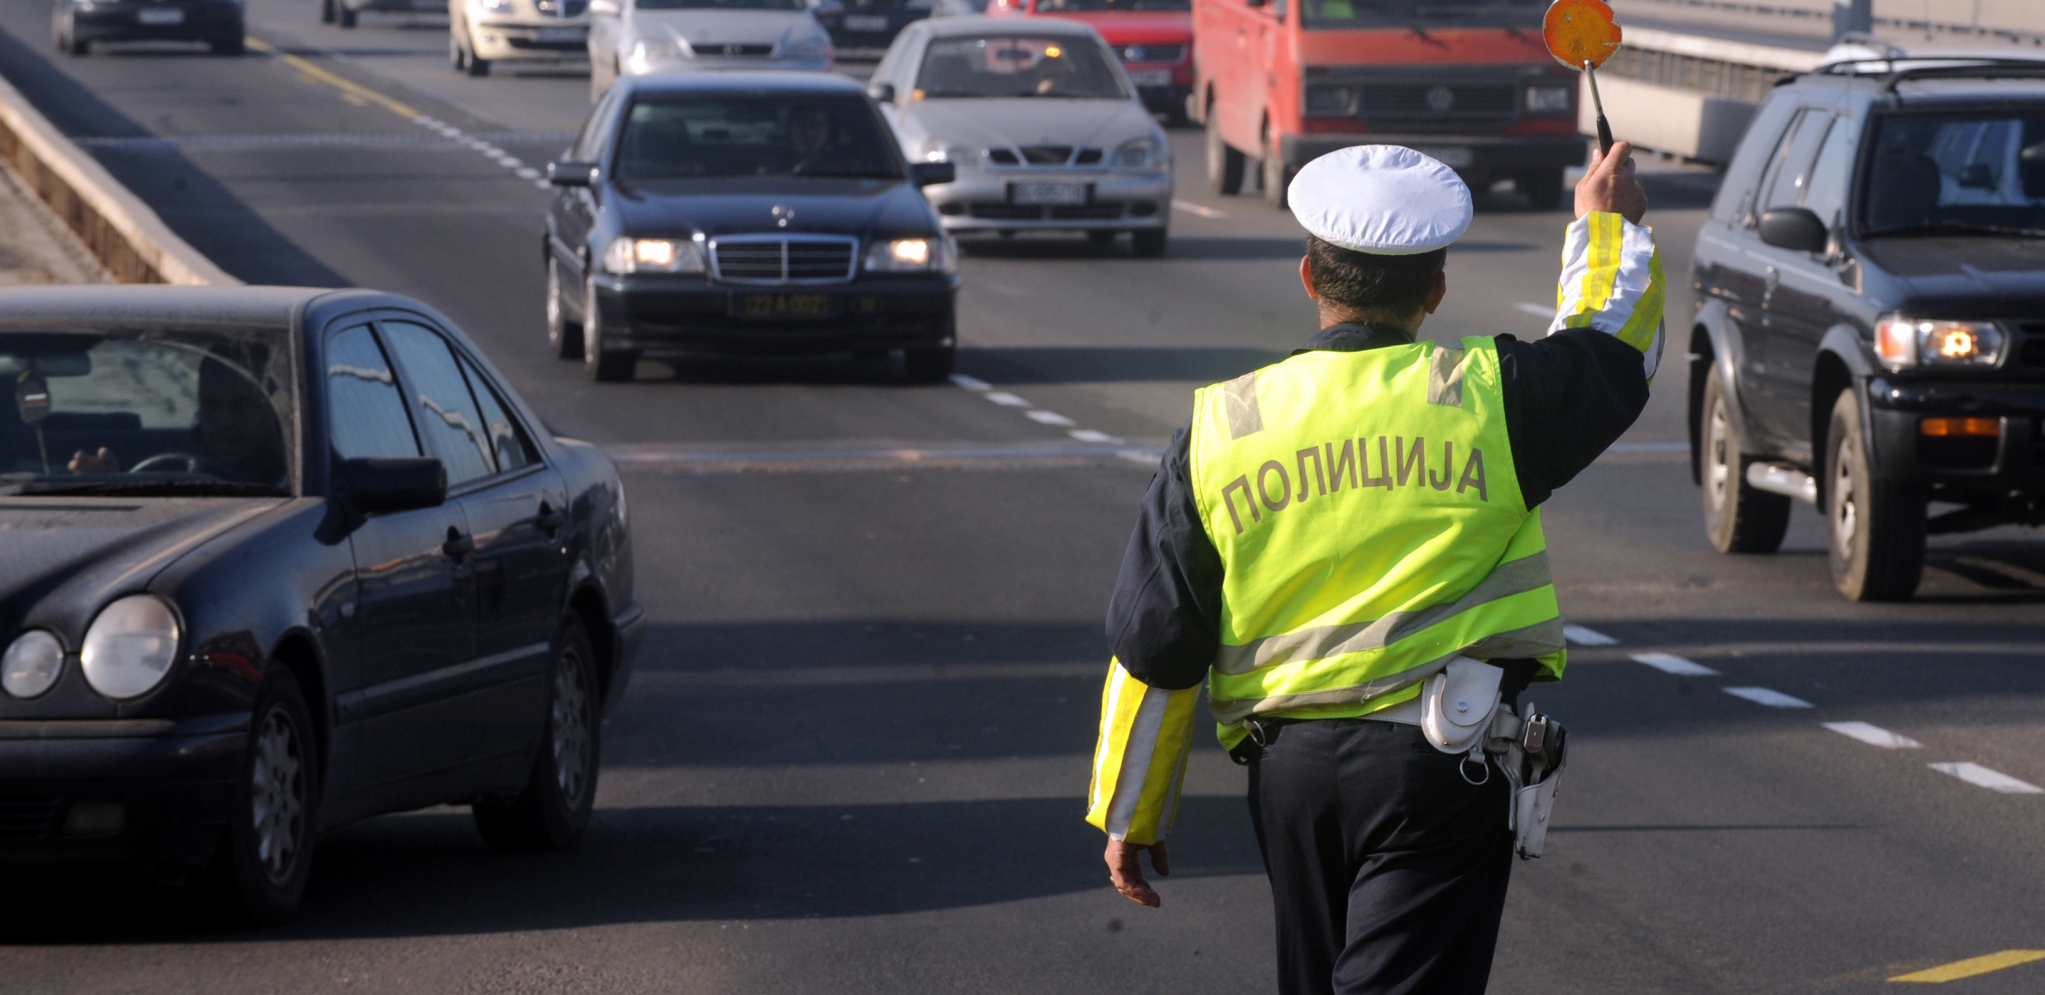 SAOBRAĆAJNA POLICIJA KREĆE U STROGE KONTROLE Akcija traje do 3. maja, svi vozači na udaru - kazne rigorozne